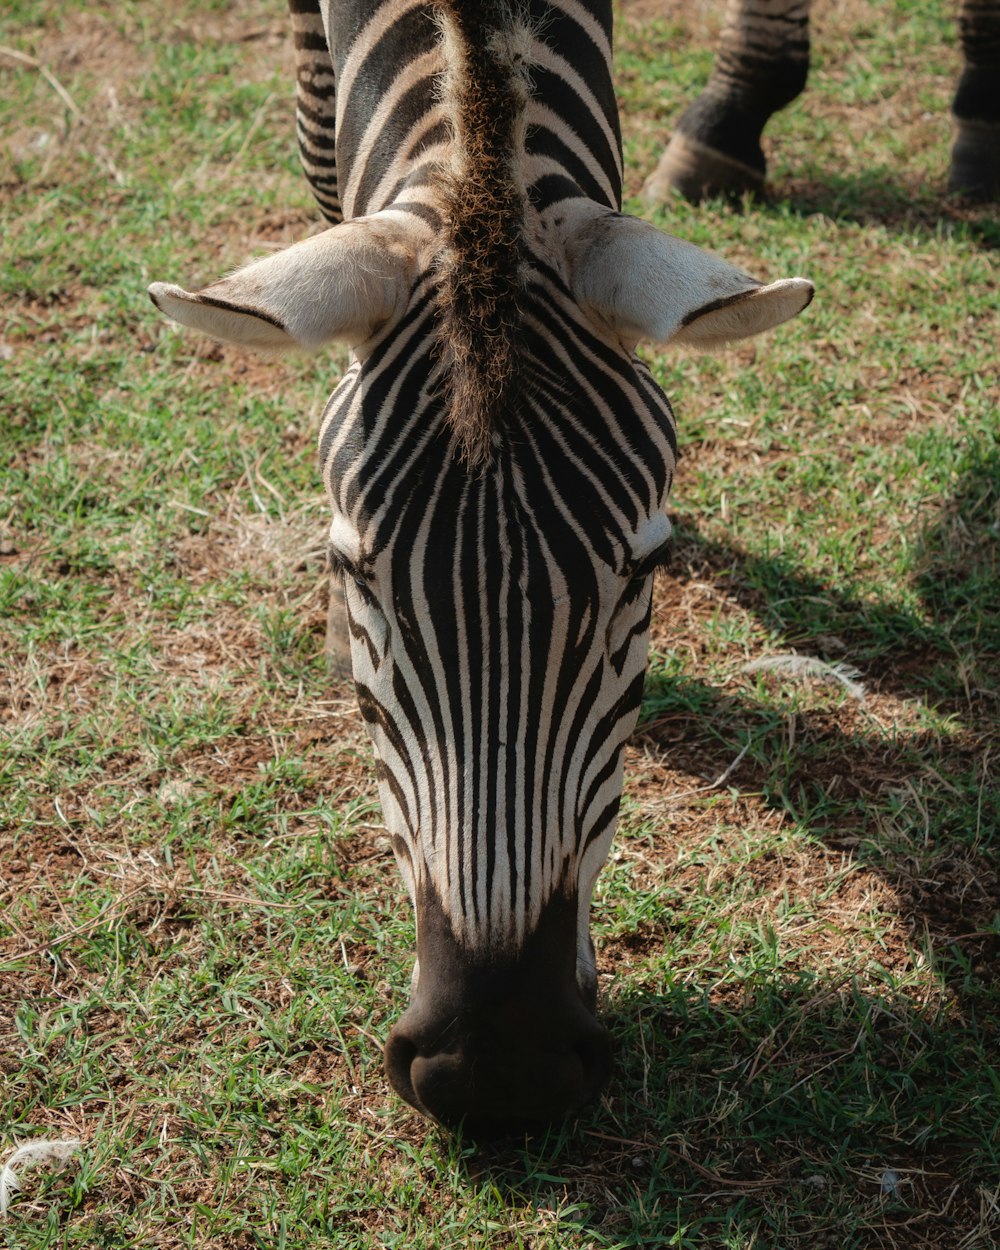 a close up of a zebra grazing on grass